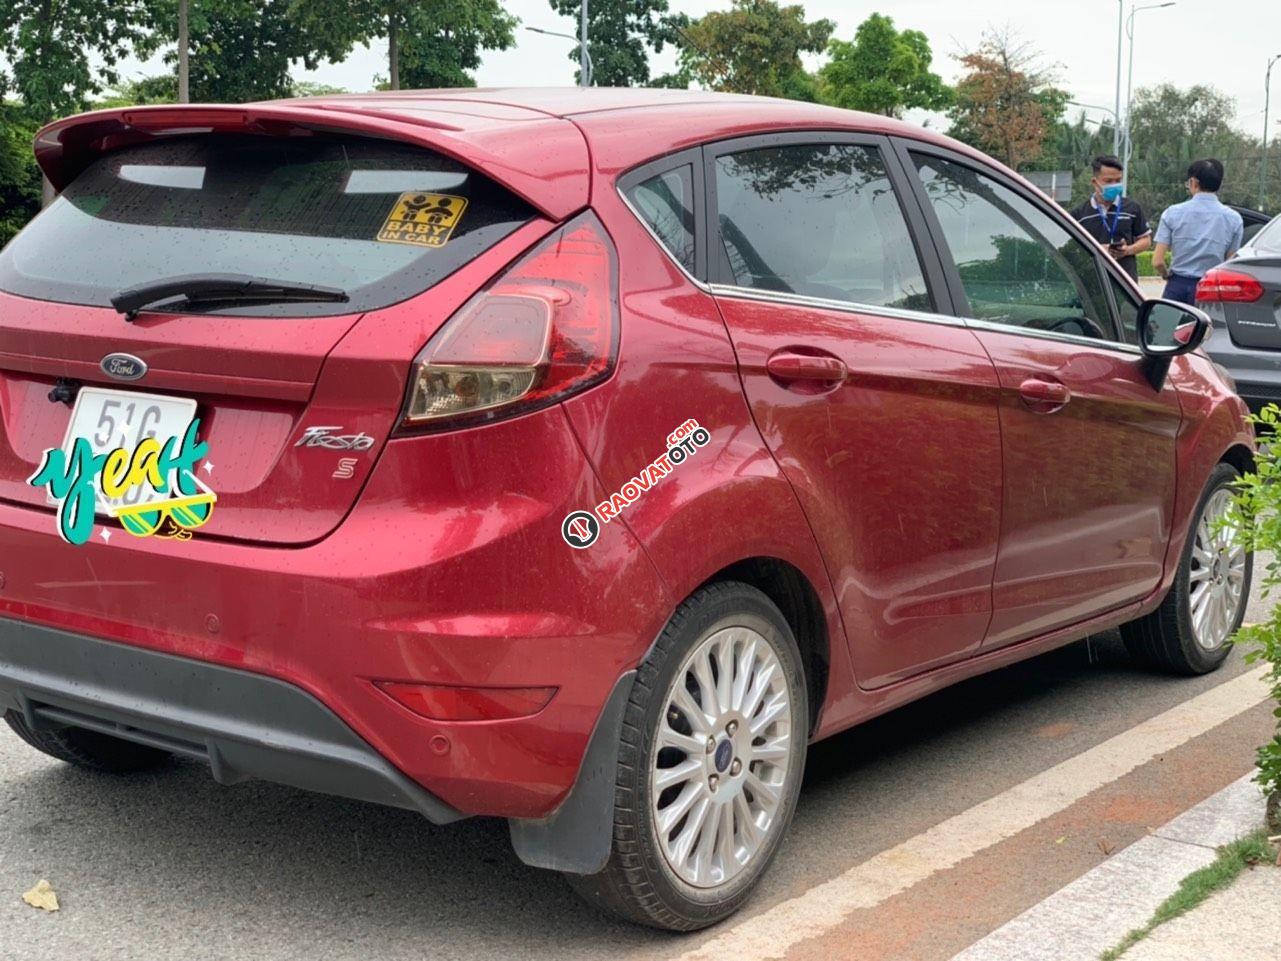 Bán xe Ford Fiesta 2018 Titanium - 1 chủ mới chạy 30.000km - Bao test hãng sản xuất 2018-3